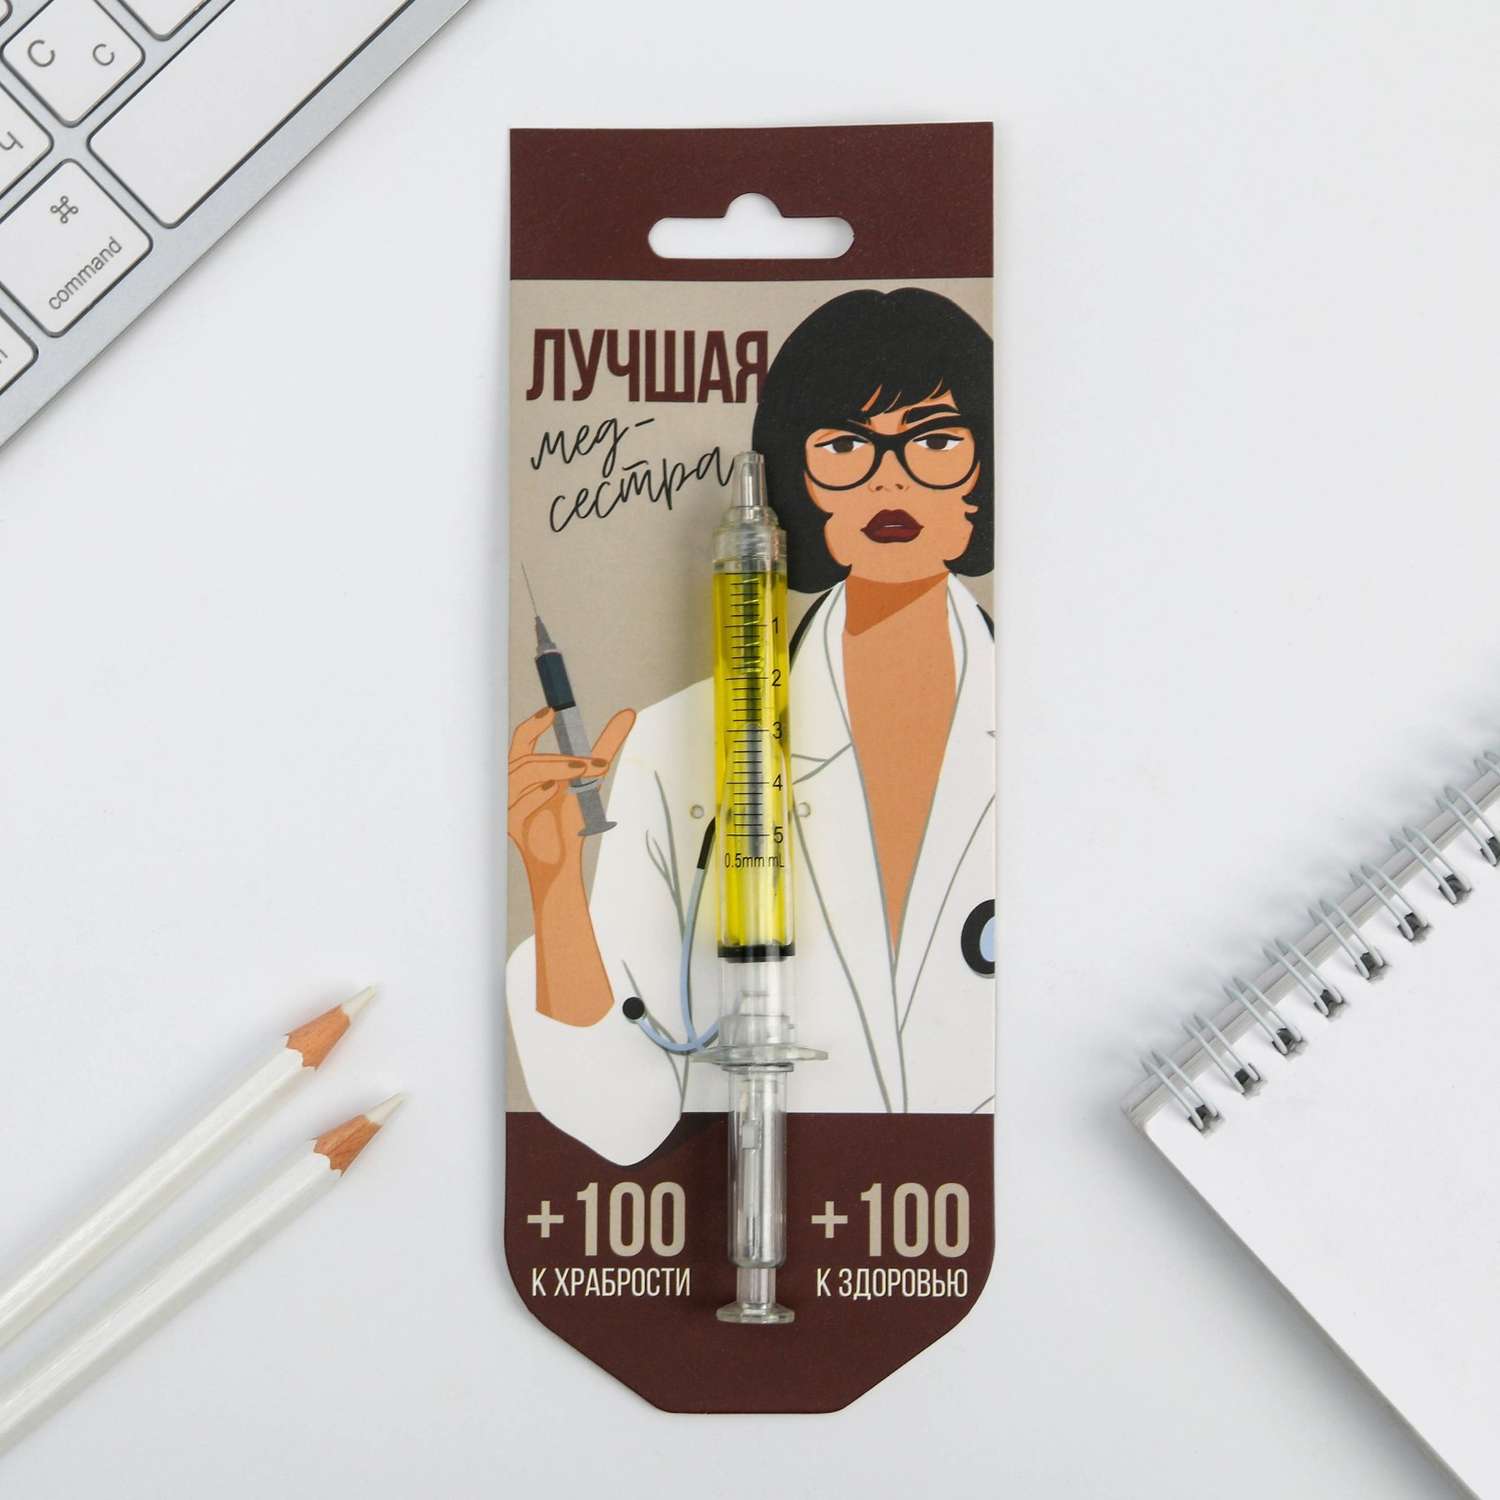 Ручка -шприц ArtFox шприц «Лучшая медсестра» на подложке - фото 2